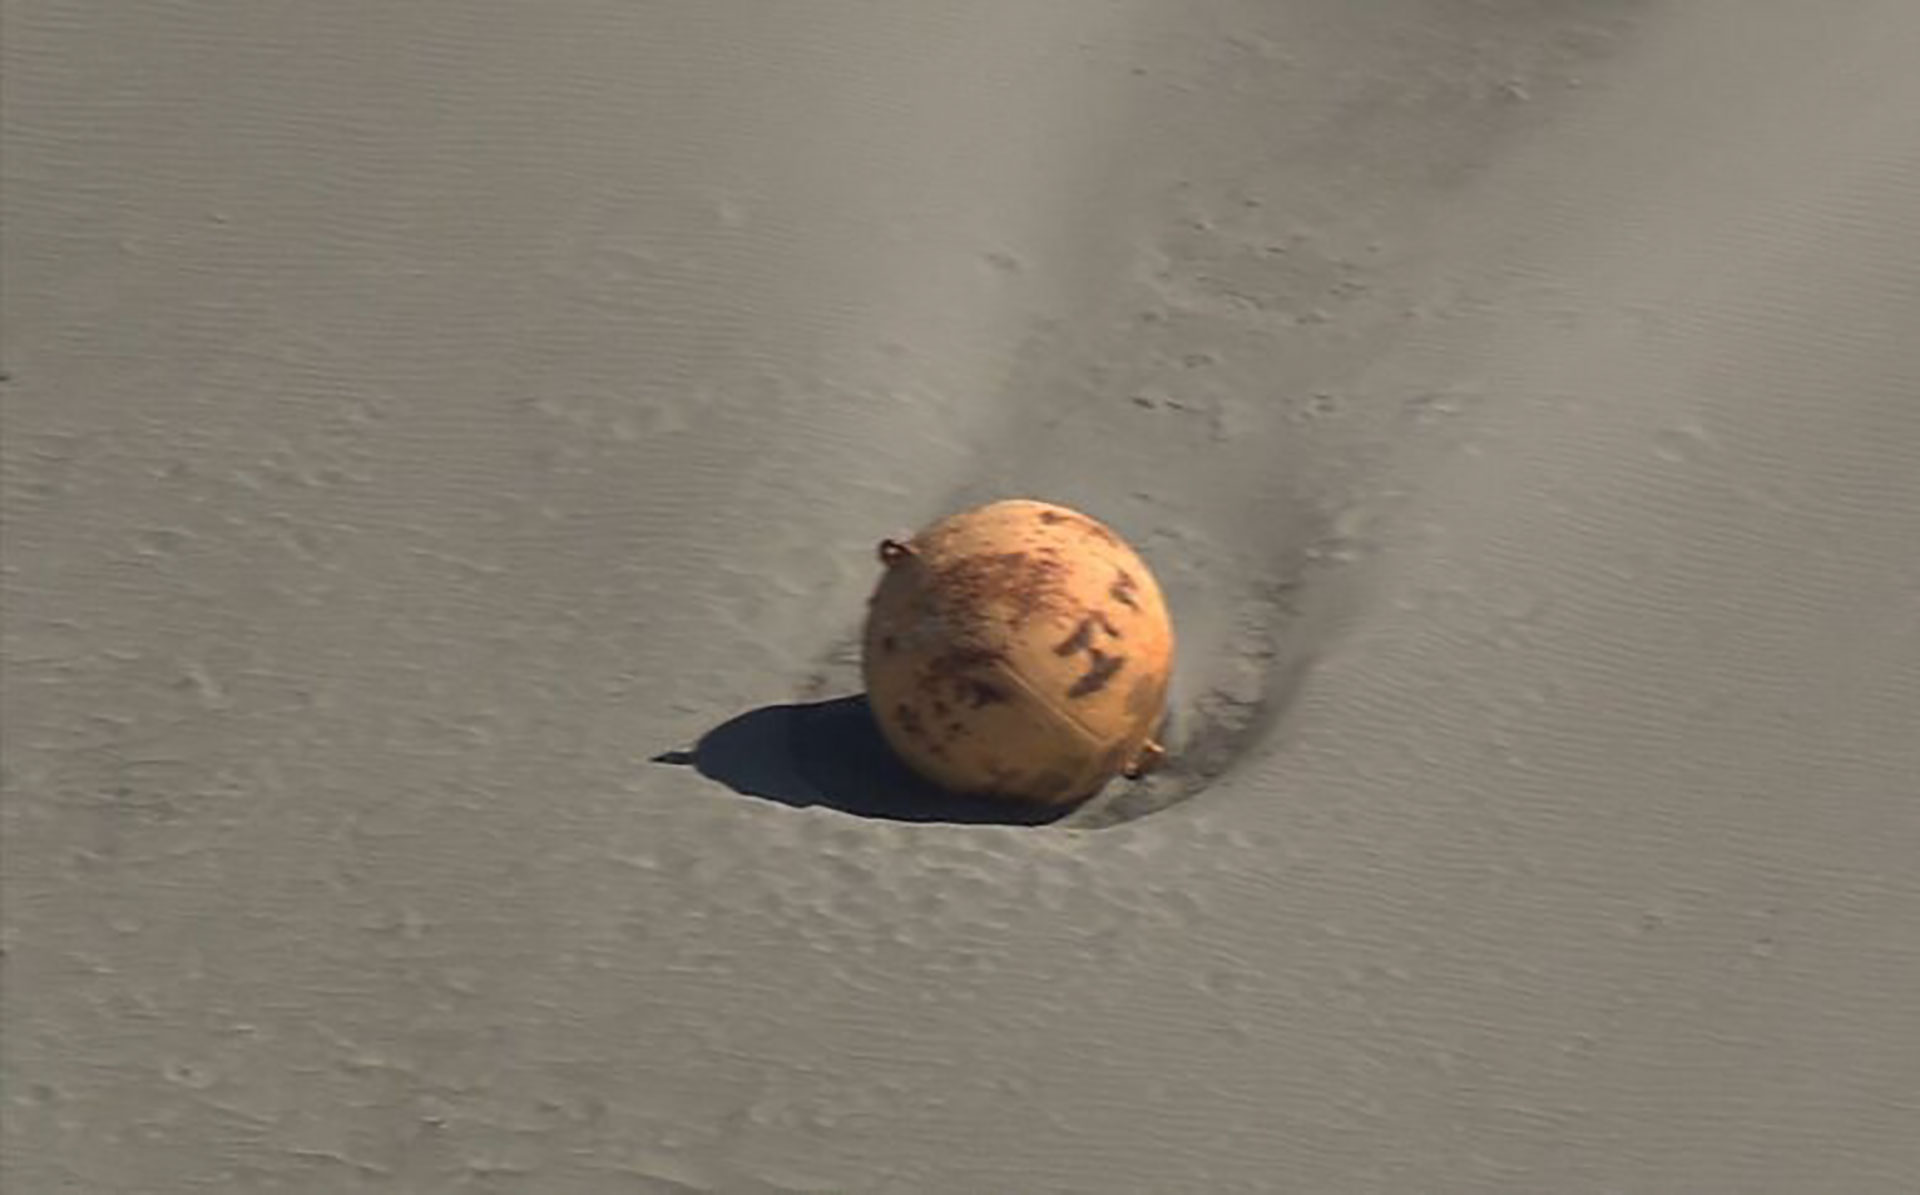 Encontraron una misteriosa bola gigante de hierro en una playa de Japón